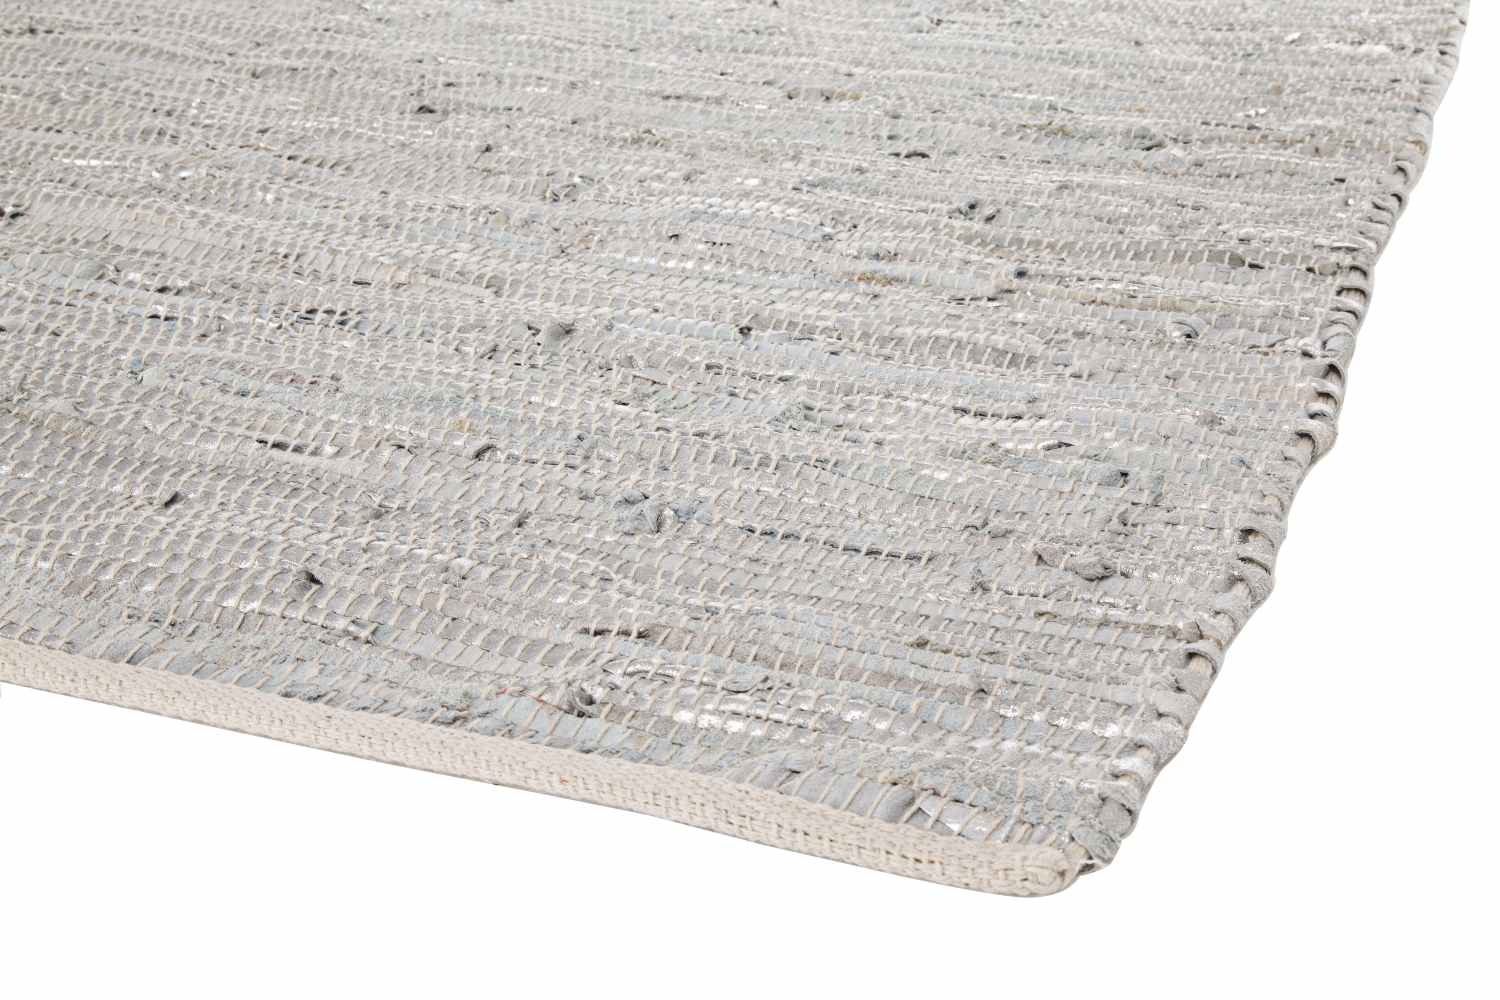 Der Teppich Helen überzeugt mit seinem klassischen Design. Gefertigt wurde die Vorderseite aus 90% Leder und 10% Baumwolle. Der Teppich besitzt einen silbernen Farbton und die Maße von 140x200 cm.